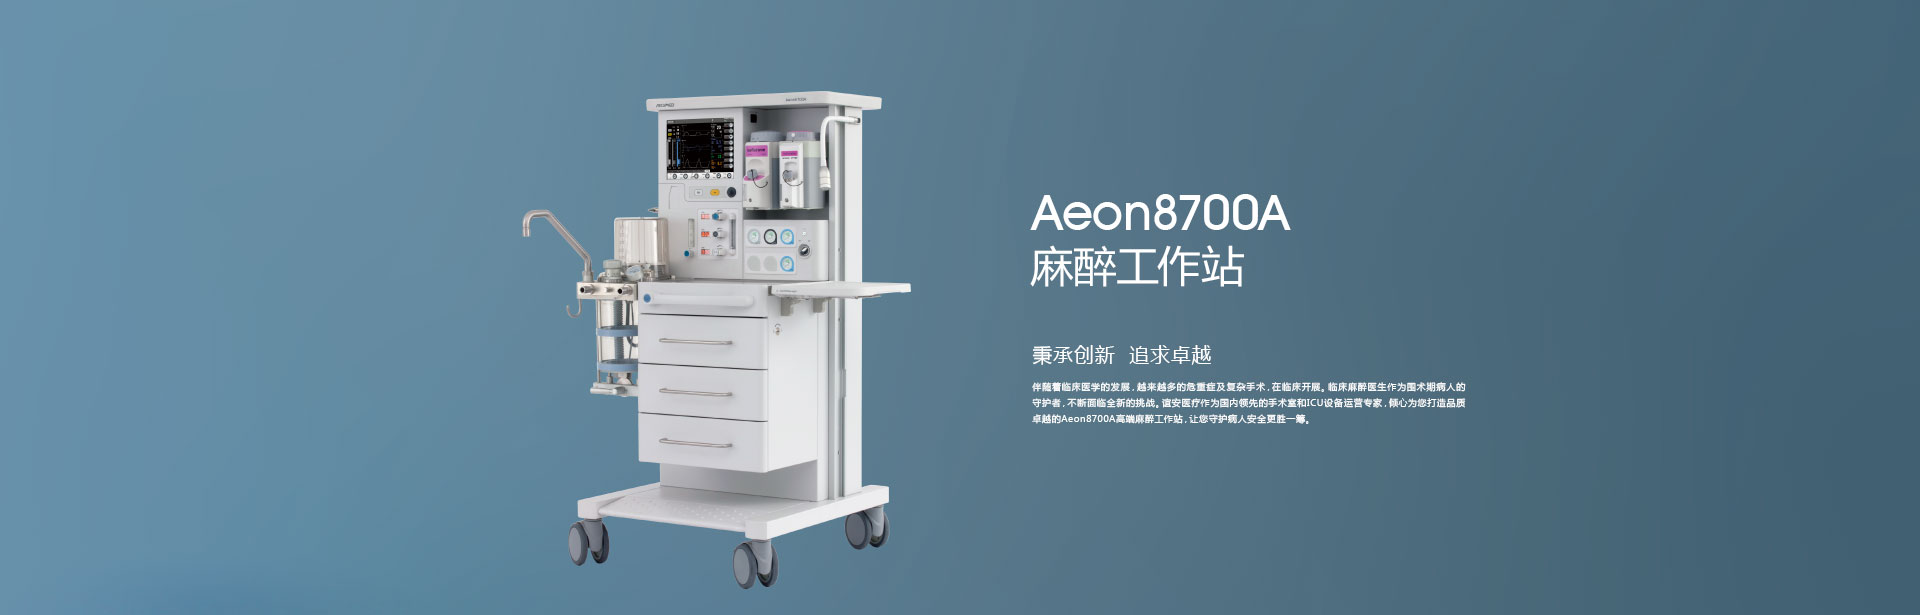 麻醉机Aeon8700A